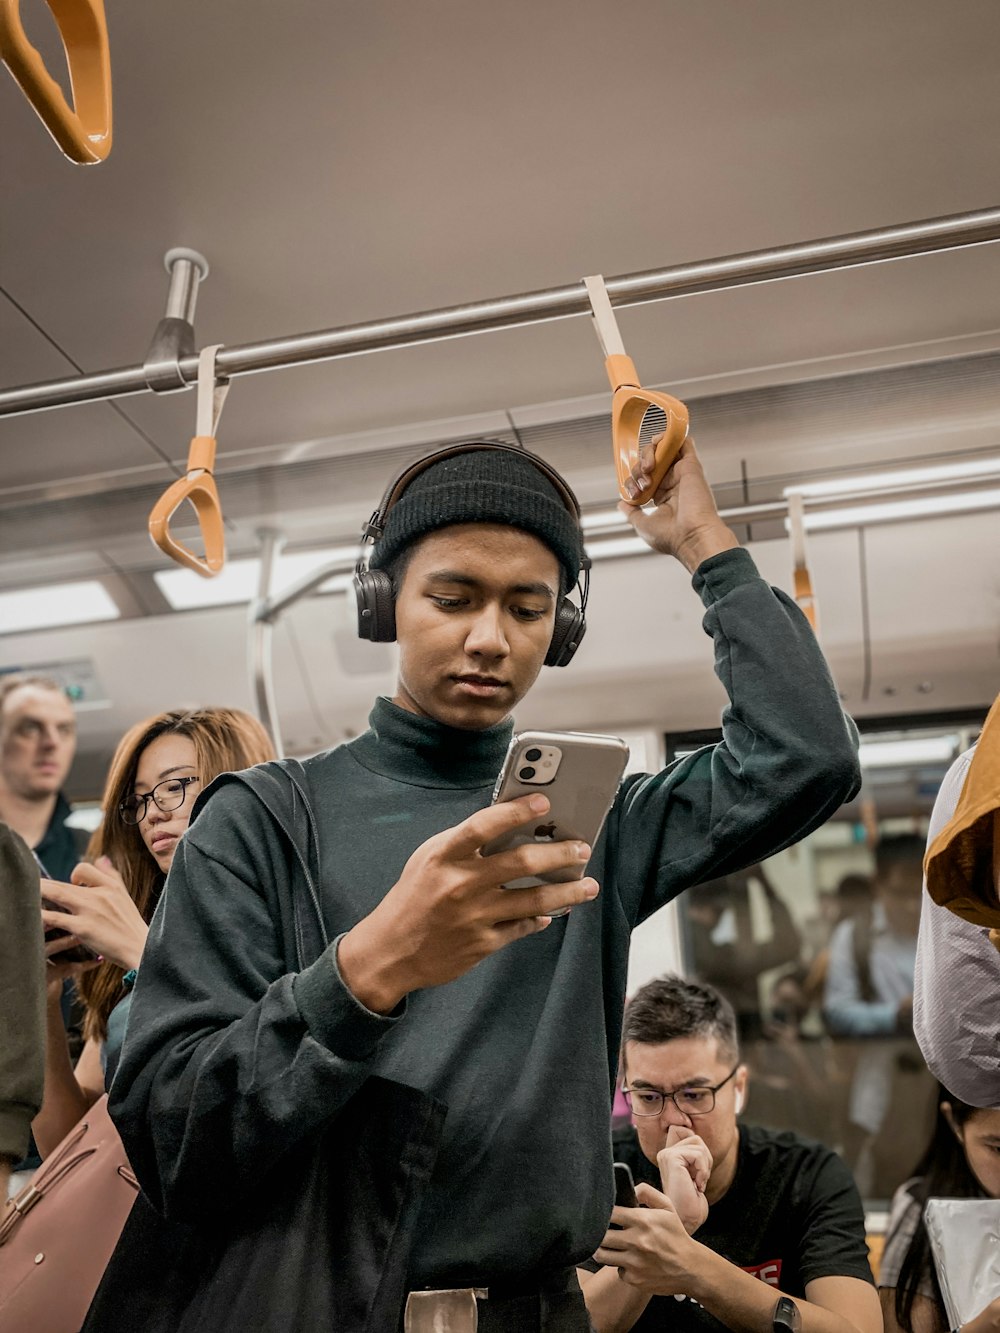 homem no trem segurando smartphone